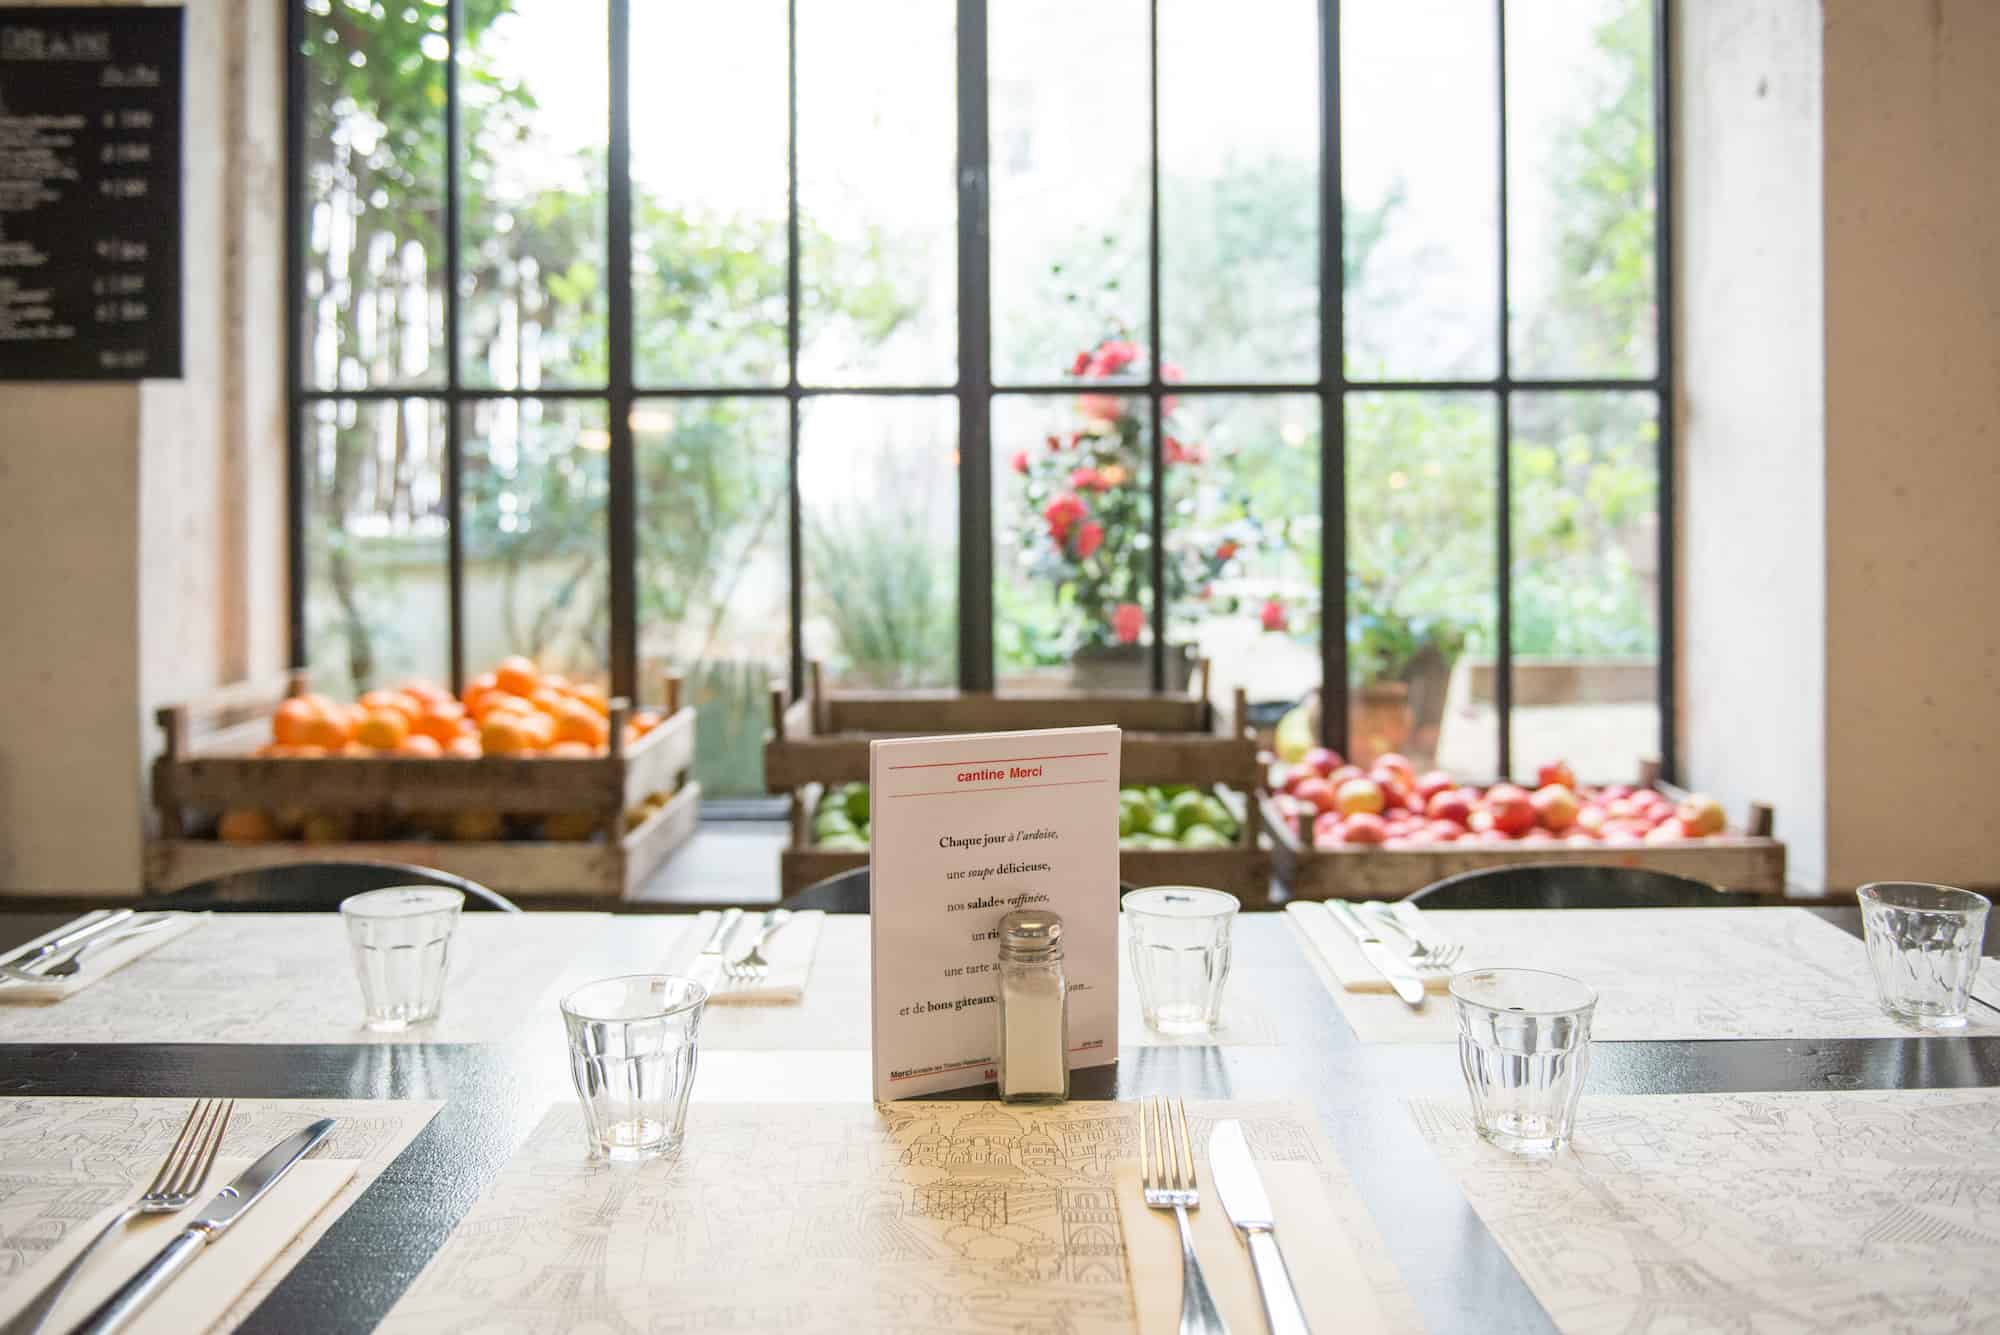 La Cantine de Merci: Light Lunch in Paris' Premier Concept Store